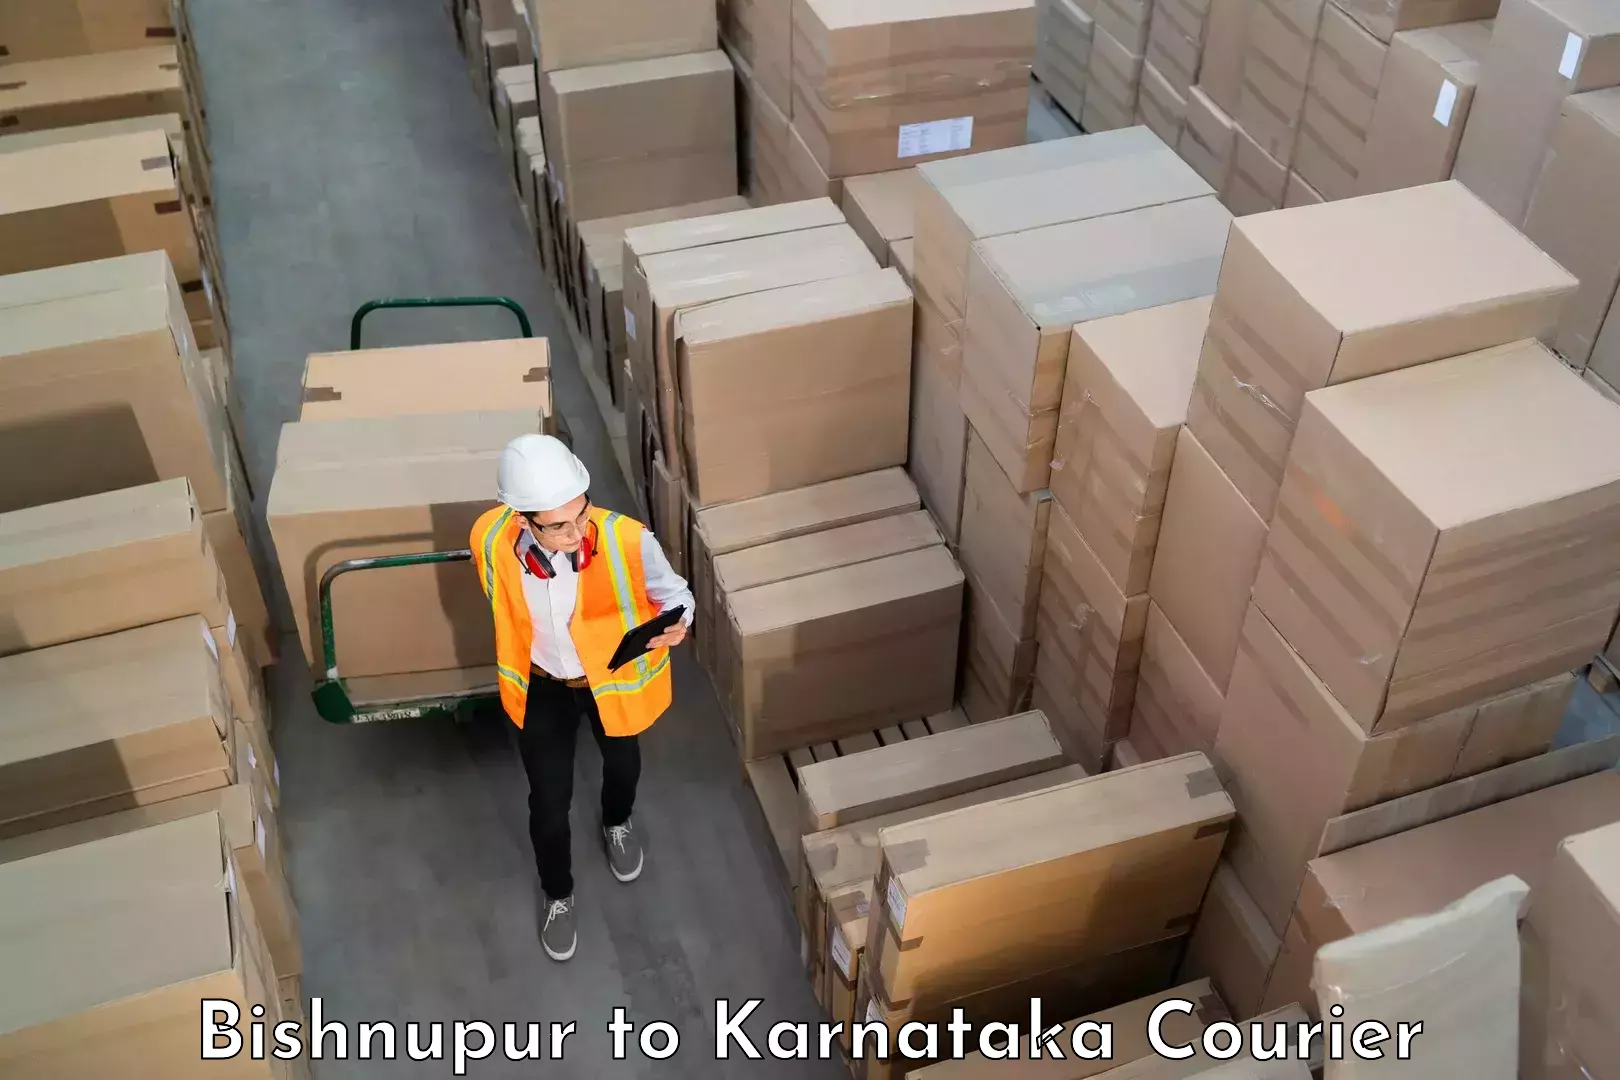 Baggage transport management Bishnupur to Karnataka